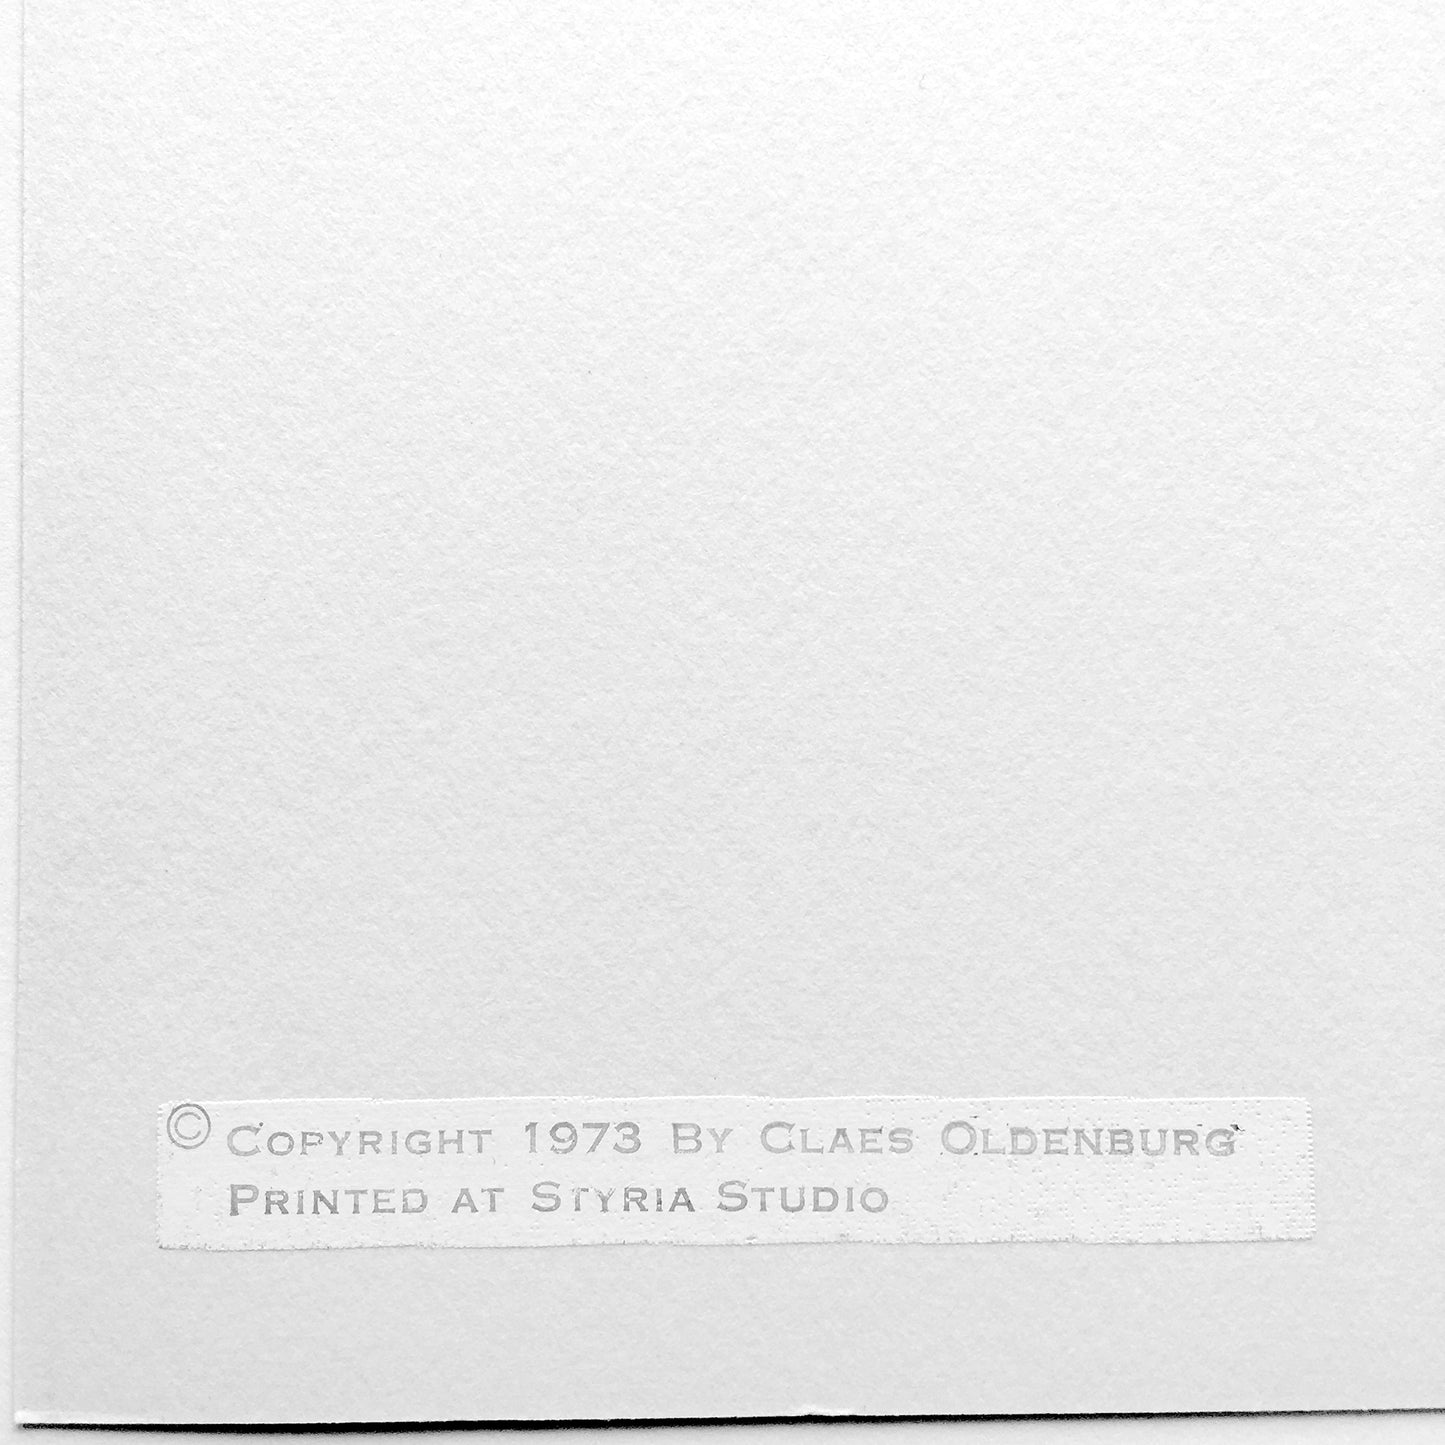 Claes Oldenburg M. Mouse-1 Ear-Tea Bag, 1973 stamp verso